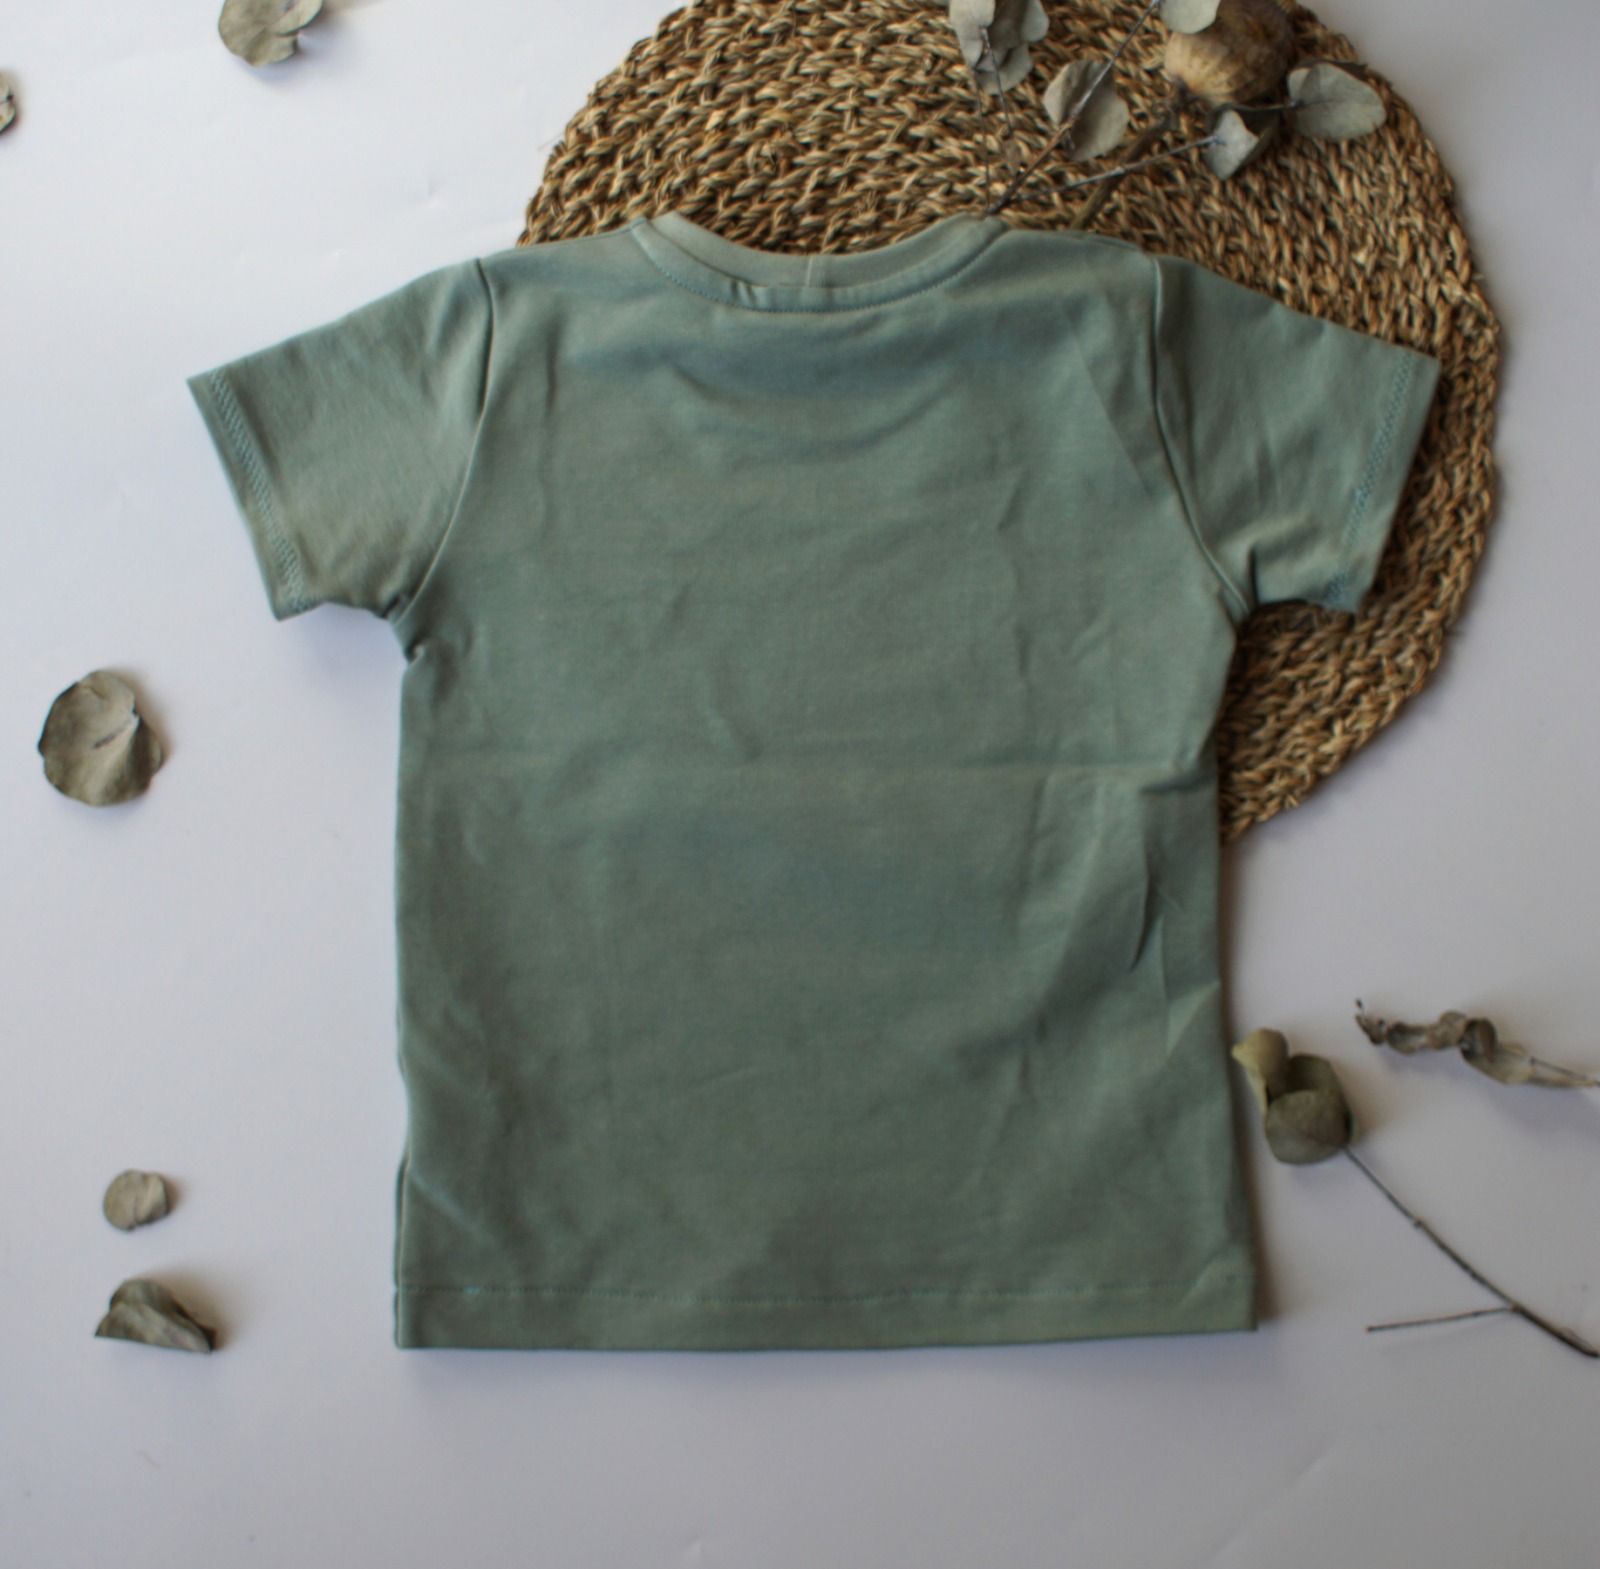 Sofortkauf Handmade T-Shirt WildOne Gr. 92 von kate.m Design 2